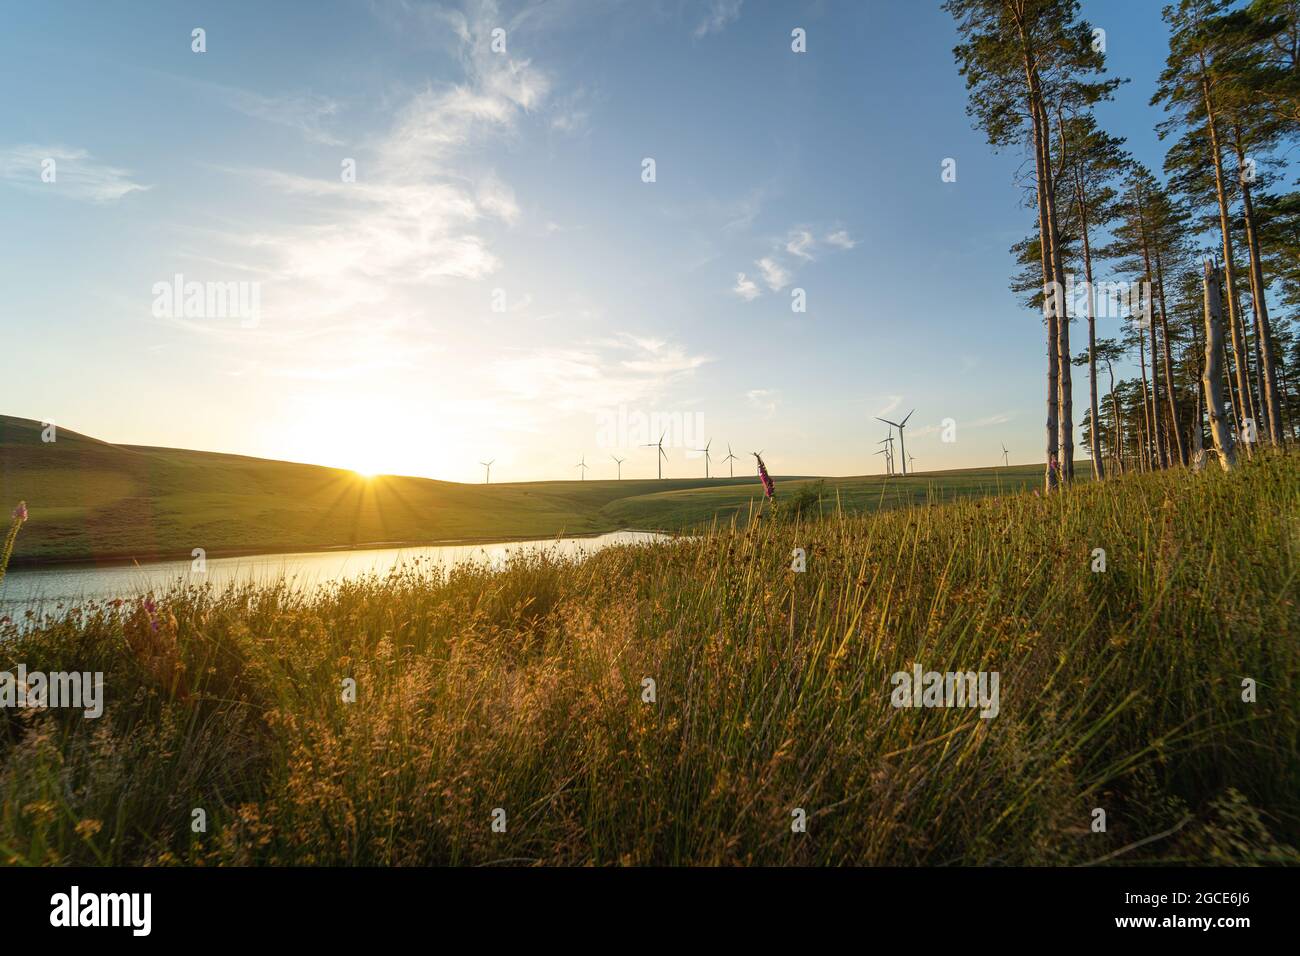 Schöne Landschaft mit Windpark in der Ferne bei Sonnenuntergang. Windkraft, grünes Energiekonzept. Oberes Lliw-Reservoir von Brynllefrith Plantation, Wales, Großbritannien. See, Feld und Bäume. Stockfoto